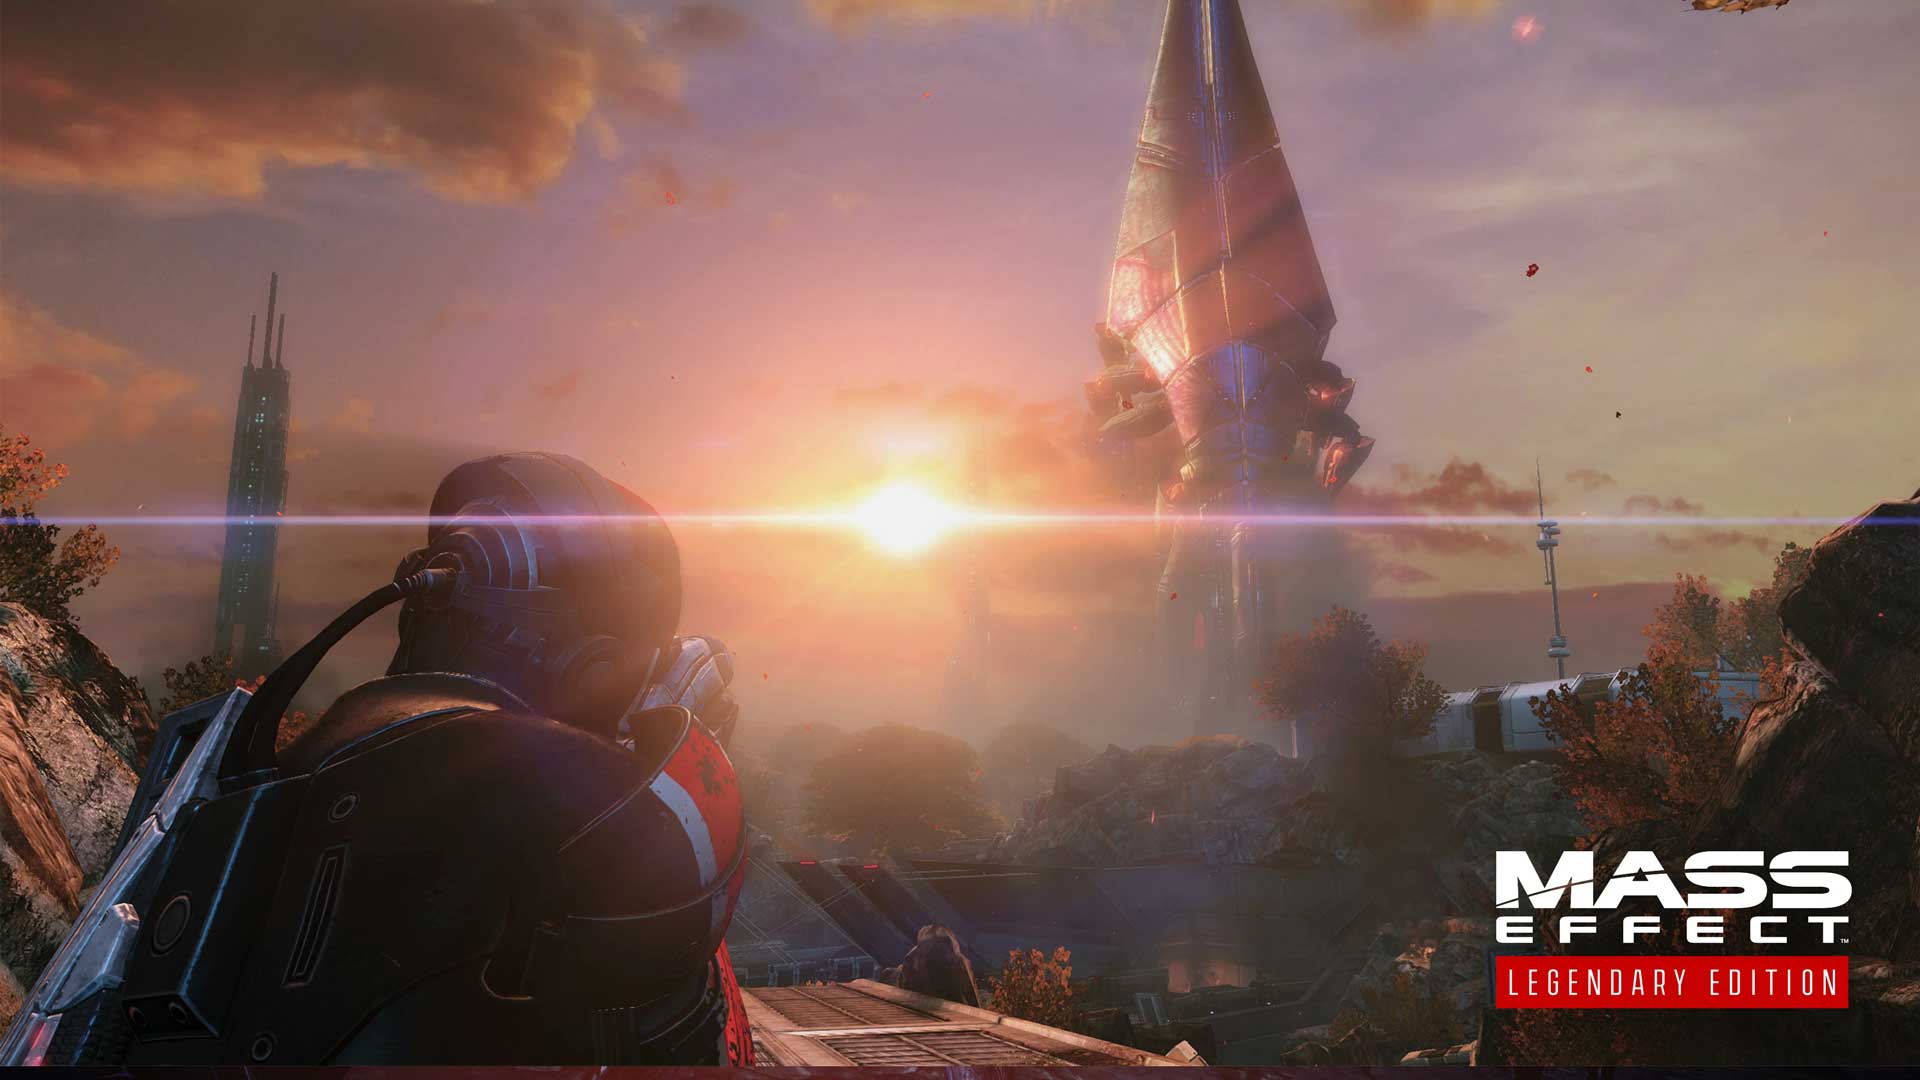 نرخ فریم ریمستر سه گانه Mass Effect روی کنسول های نسل نهم